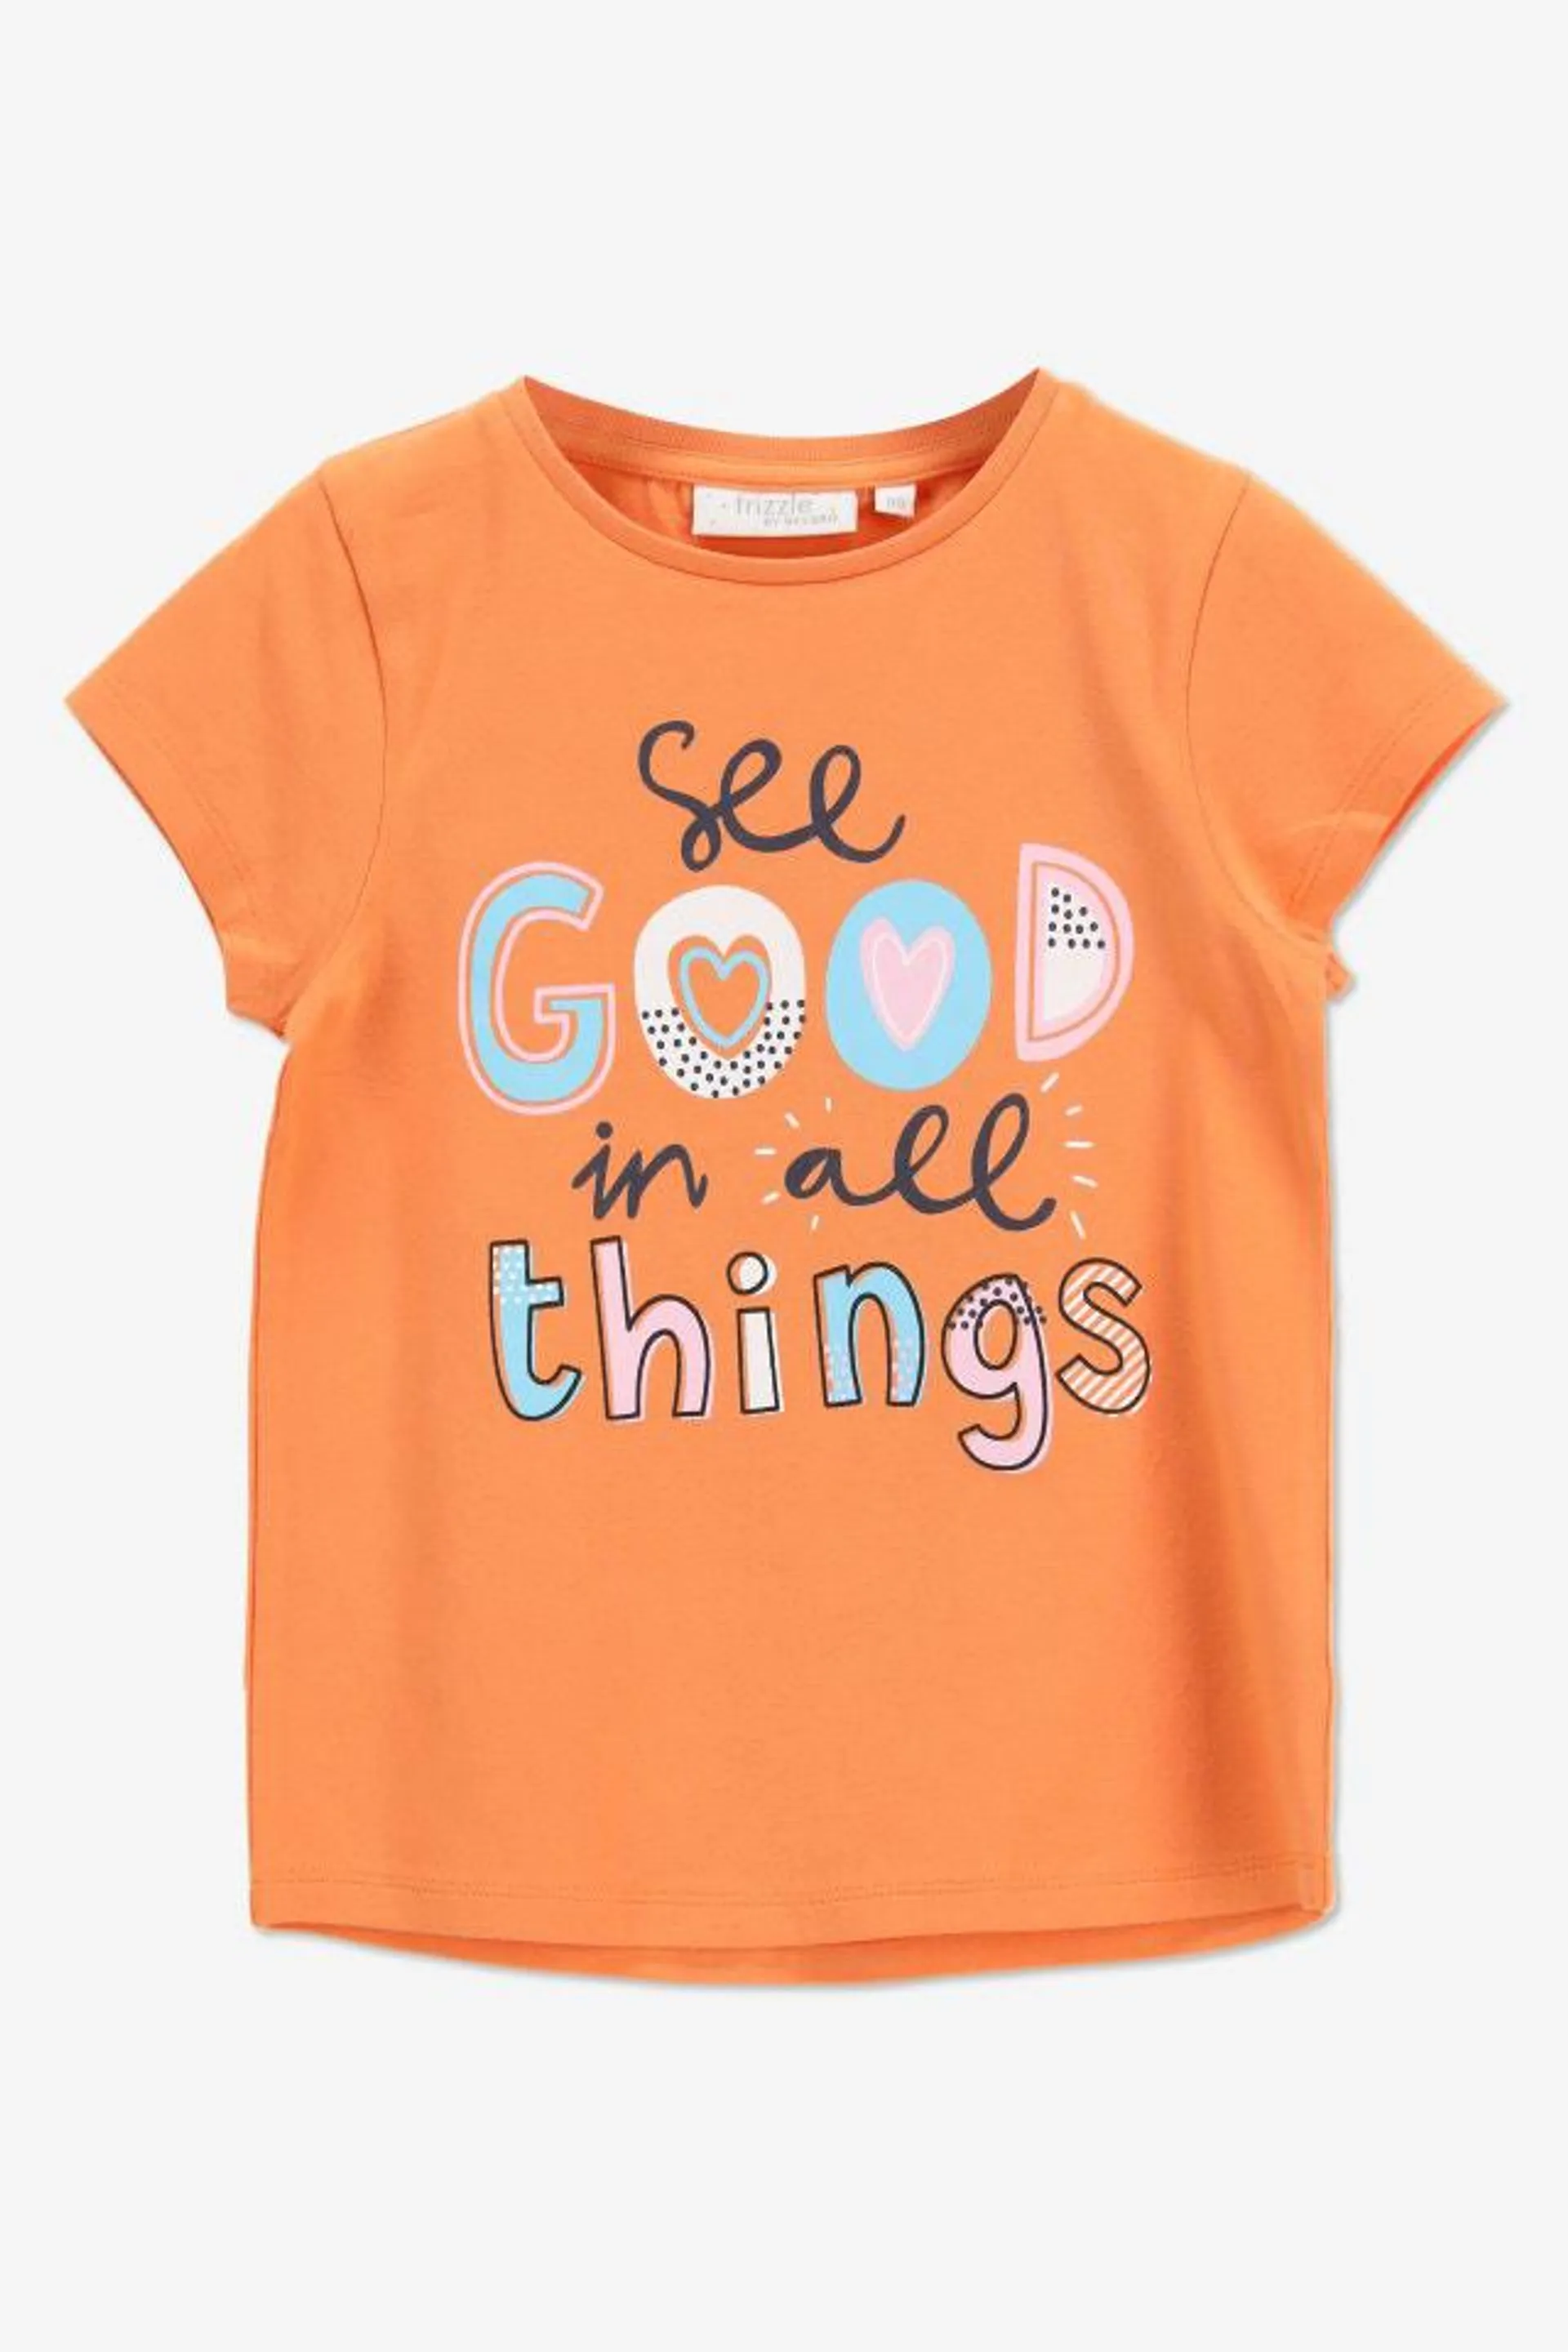 Oranje T-shirt met print "See good in all things"